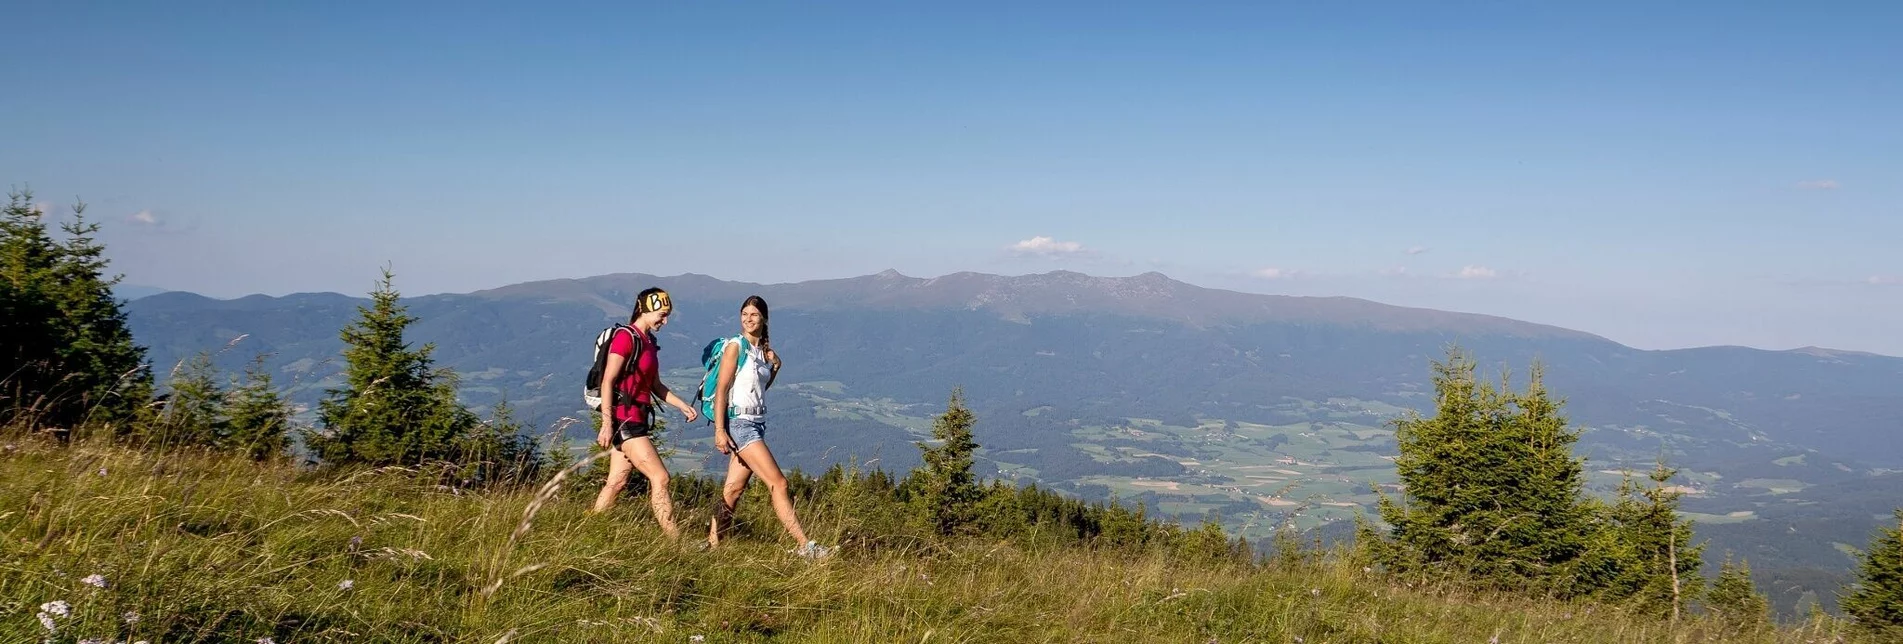 Hiking route Stolzalpe - Touren-Impression #1 | © Tourismusverband Region Murau